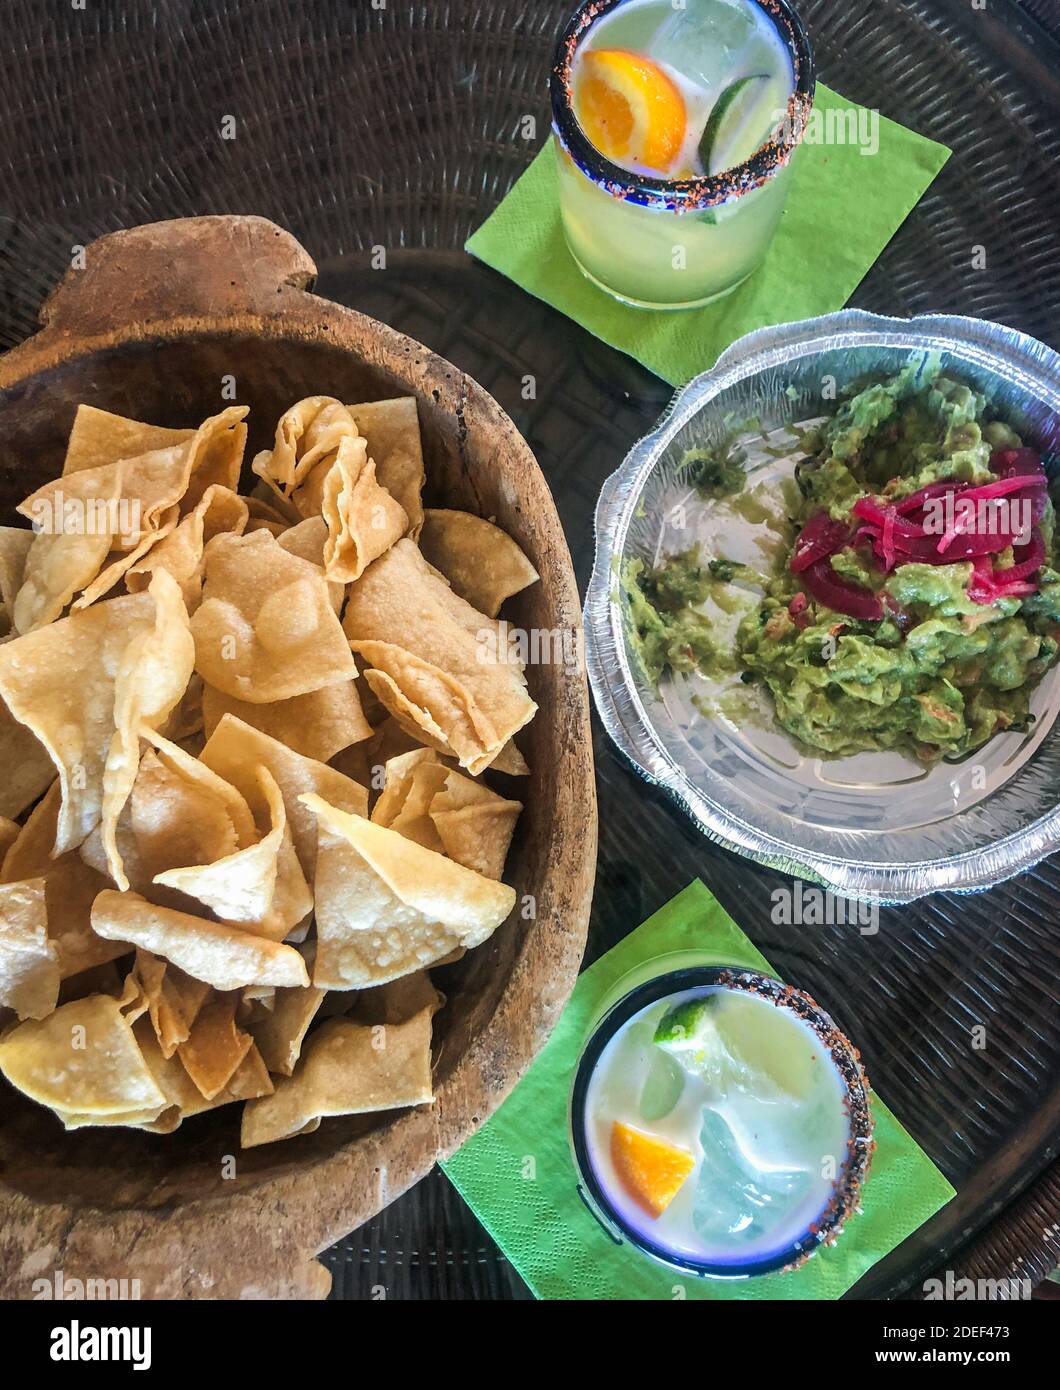 Mexikanisches Essen zum Mitnehmen. Nehmen Sie Guacamole in einem Take-out-Behälter und Chips in einer Holzschale mit 2 Margaritas in Gläsern mit gesalzenem Rand. COVID. Stockfoto